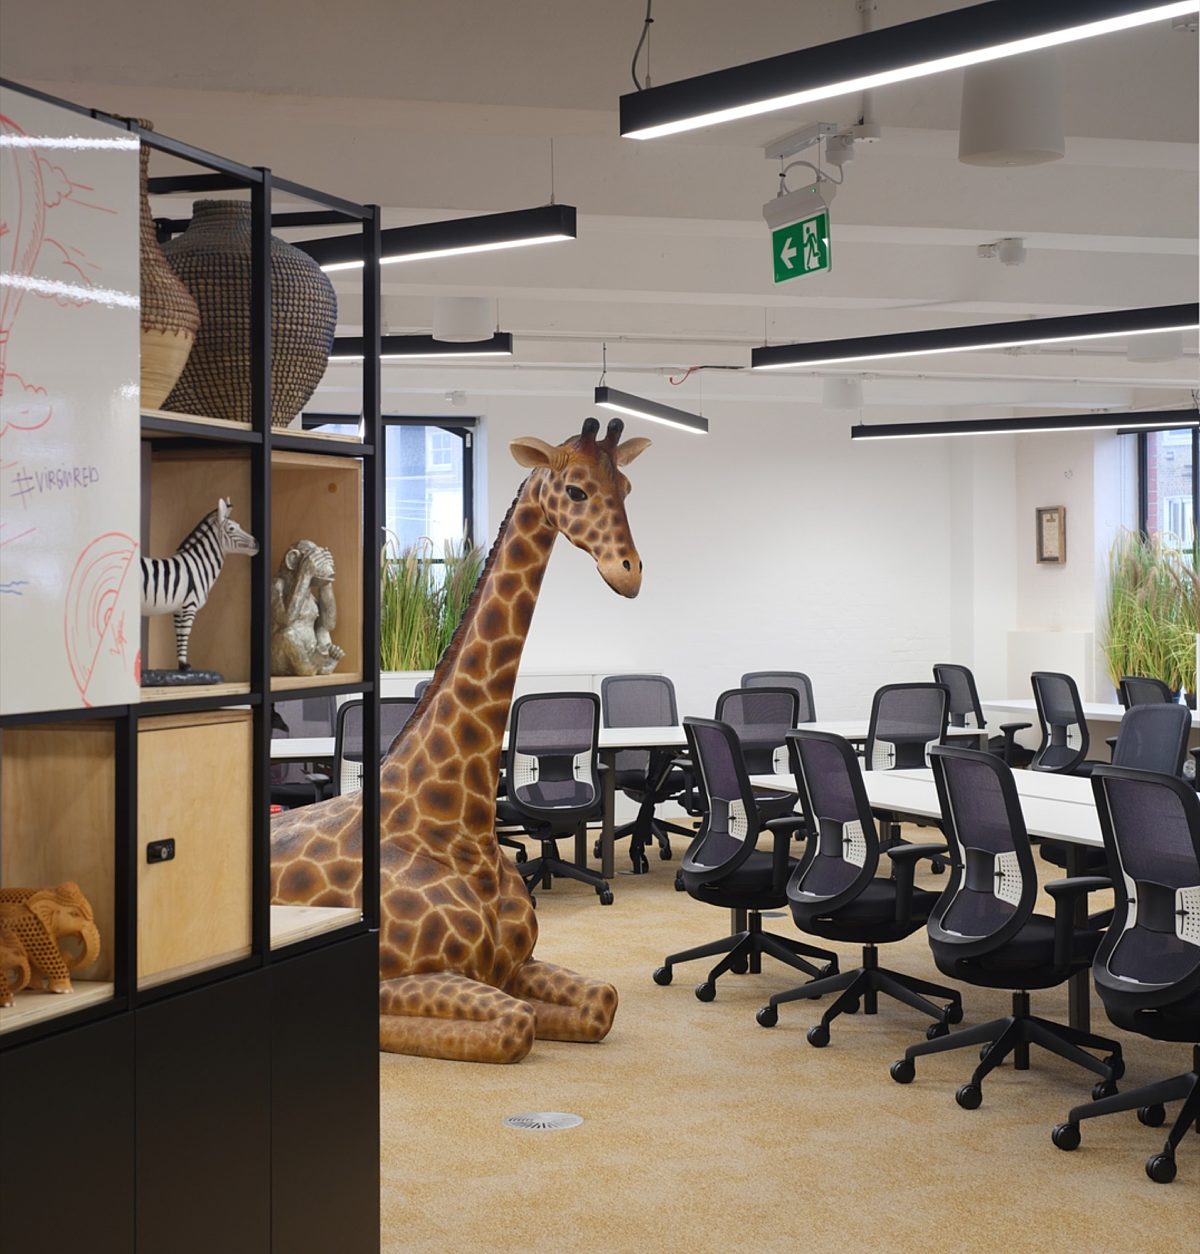 Virgin giraffe in open plan office